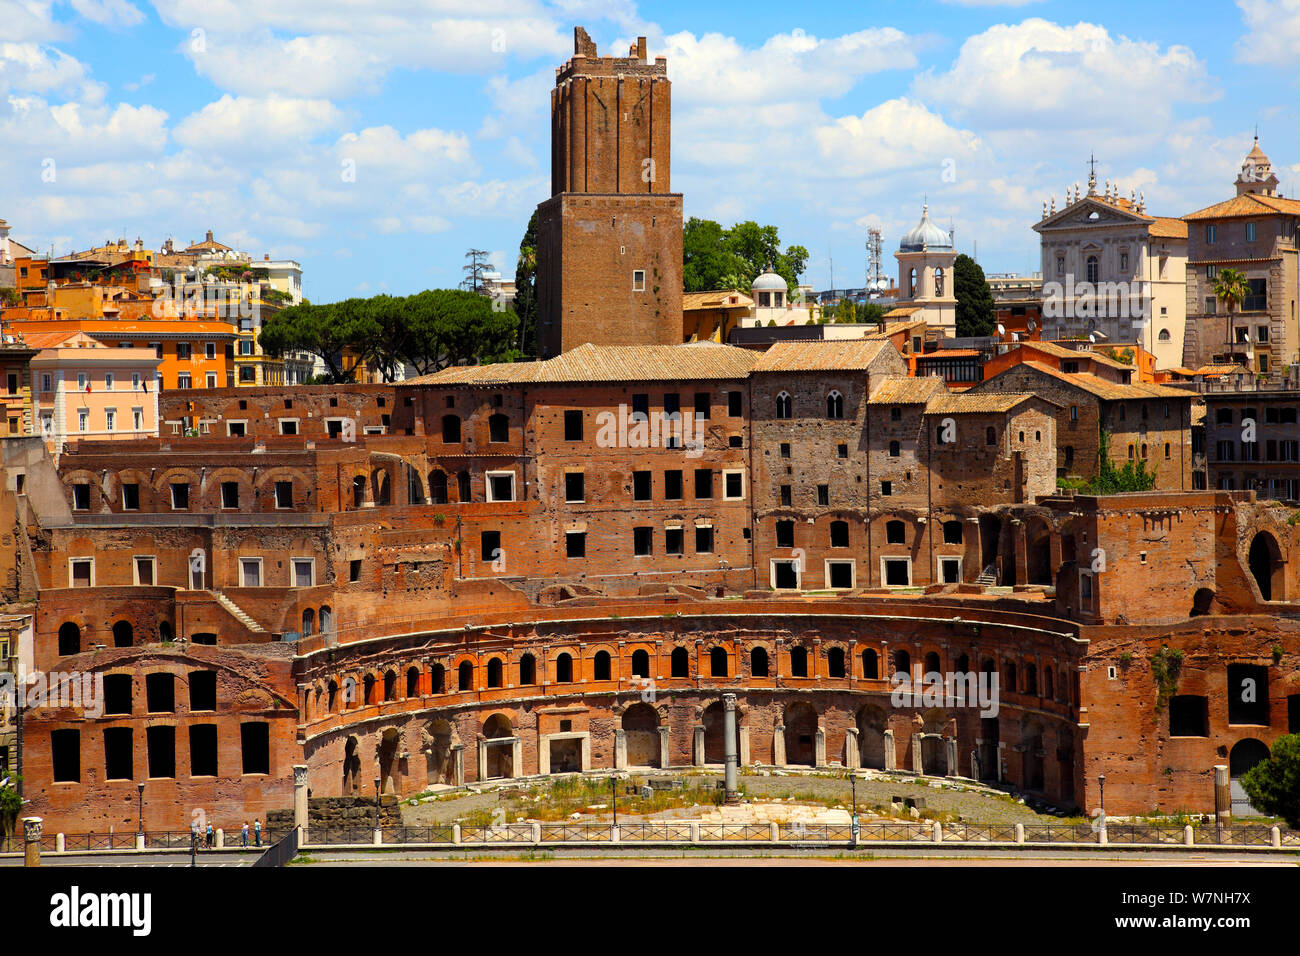 Mercati di Traiano (Trajan's Market) and the Torre delle Milizie (Militia Tower) in Rome Stock Photo